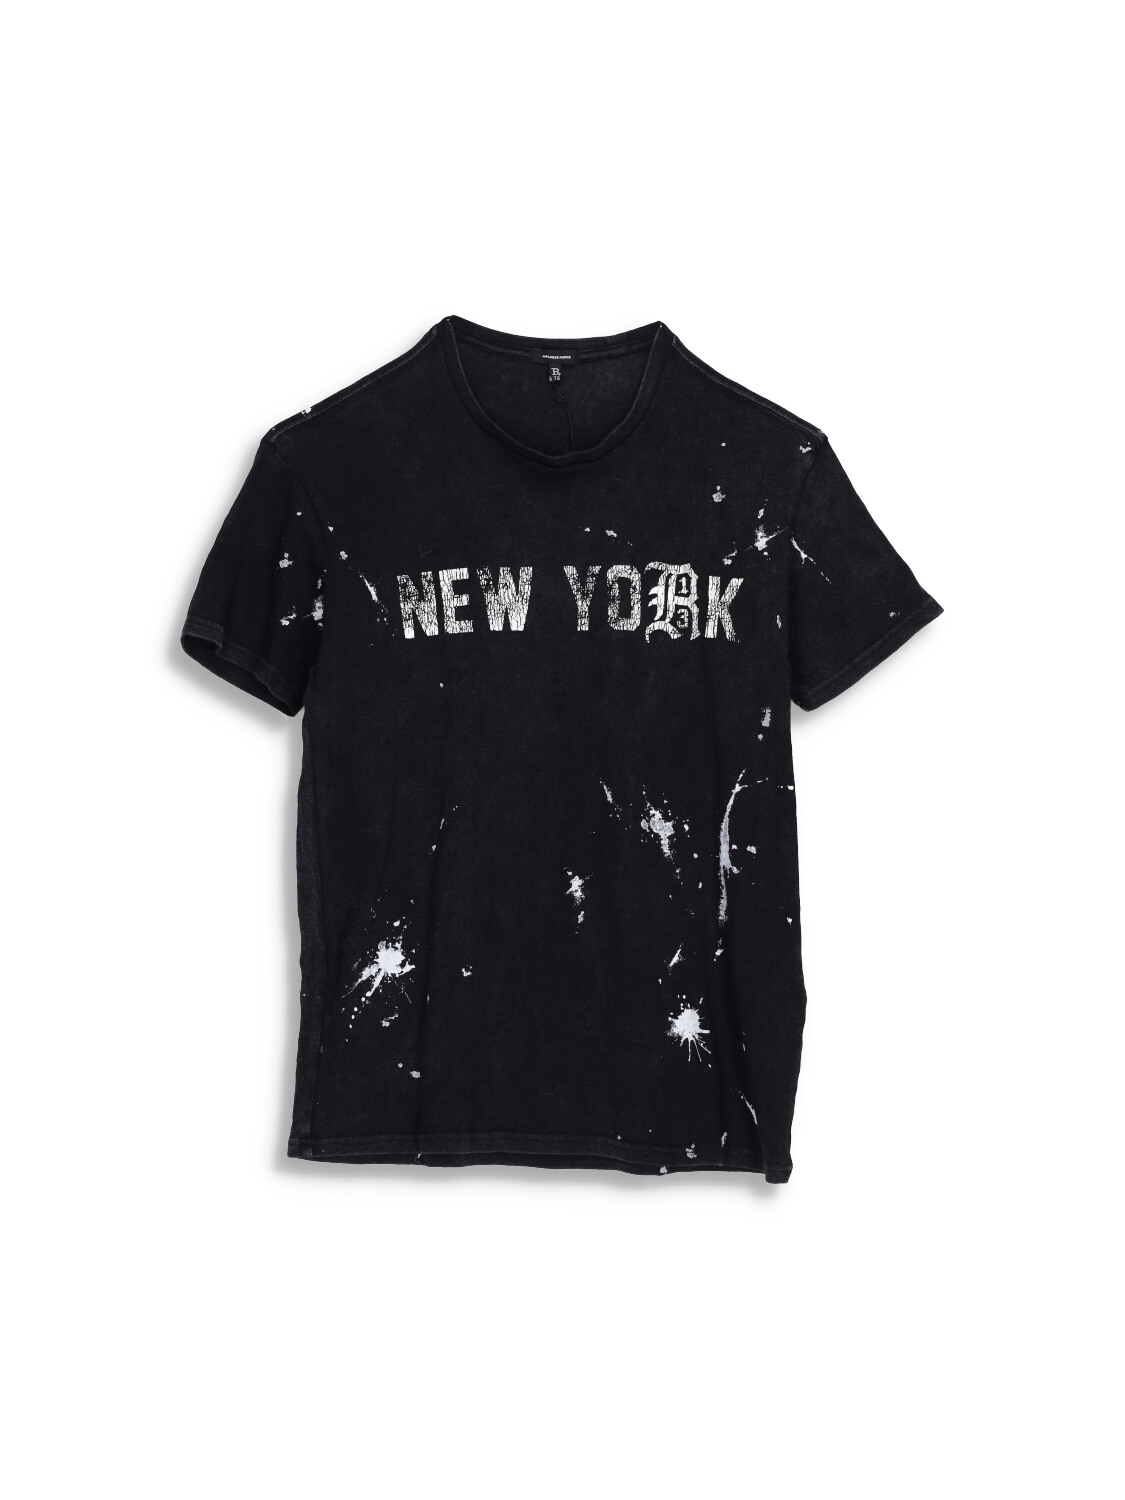 New York Boy T-Shirt - Splatter shirt made of cotton 